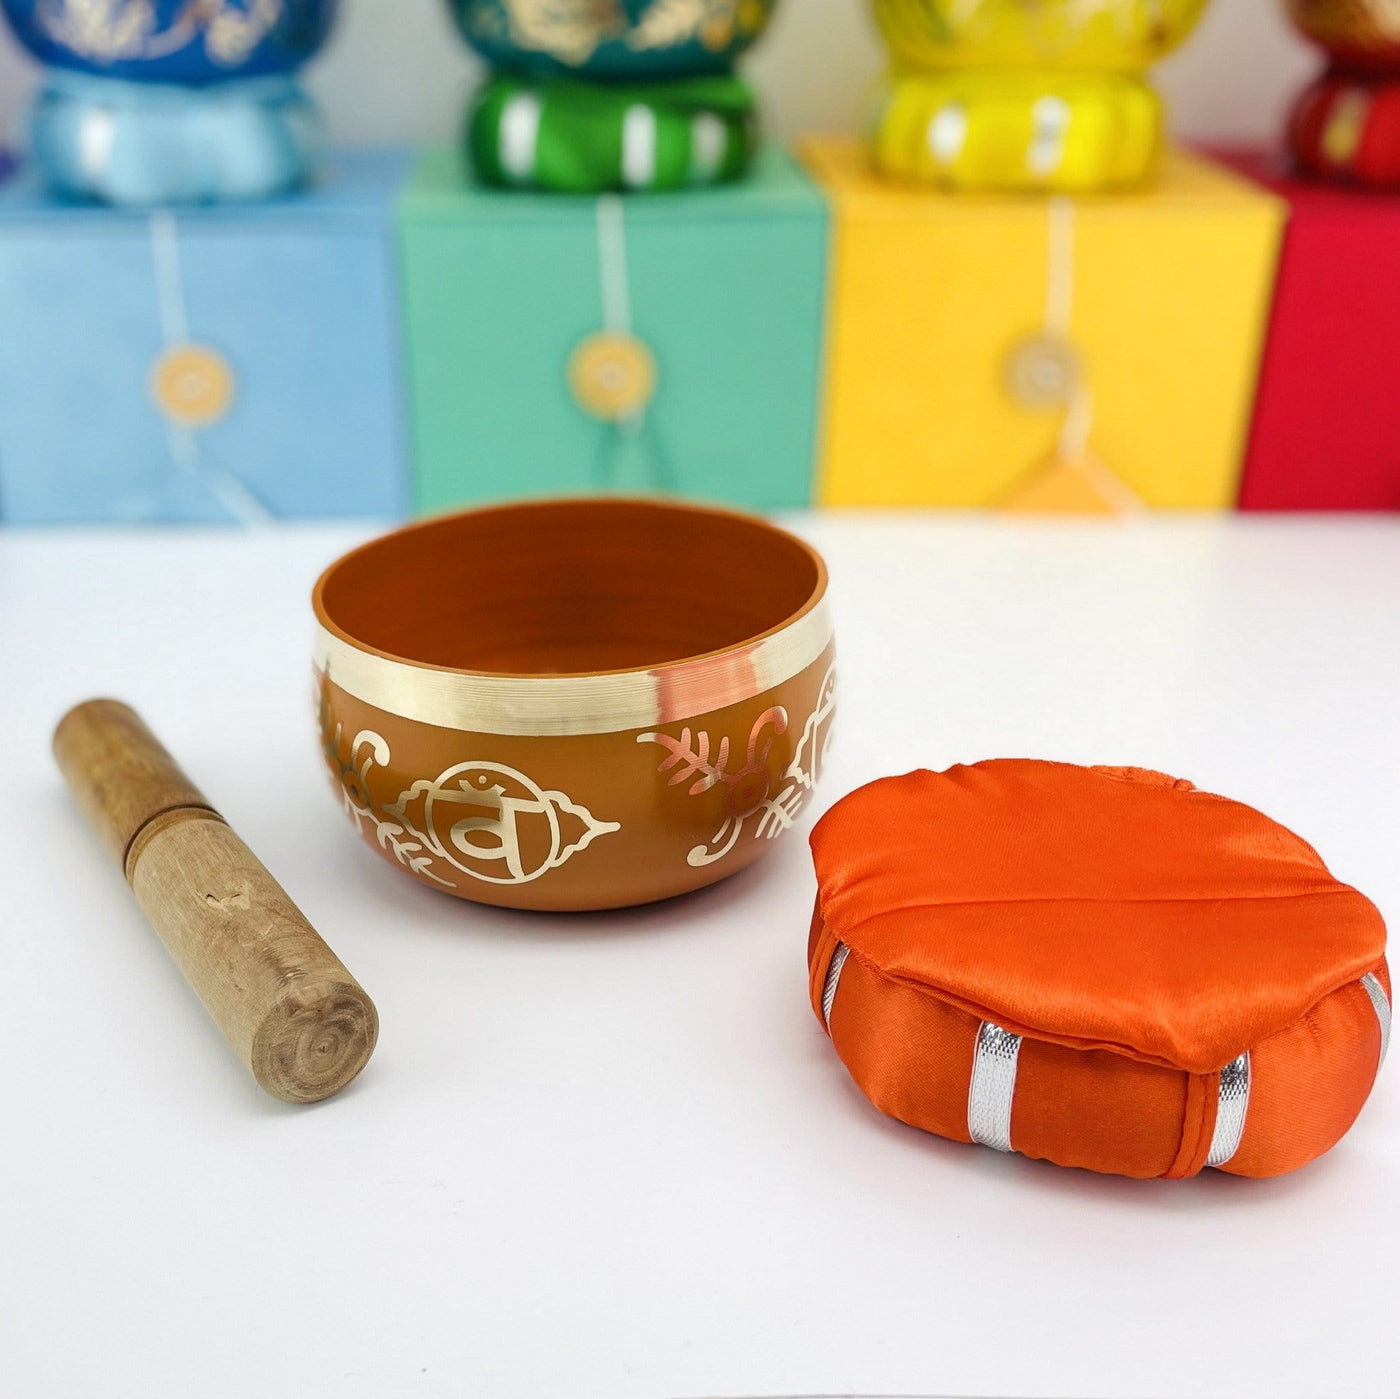 Brass Tibetan Singing Bowls - orange bowl on a table